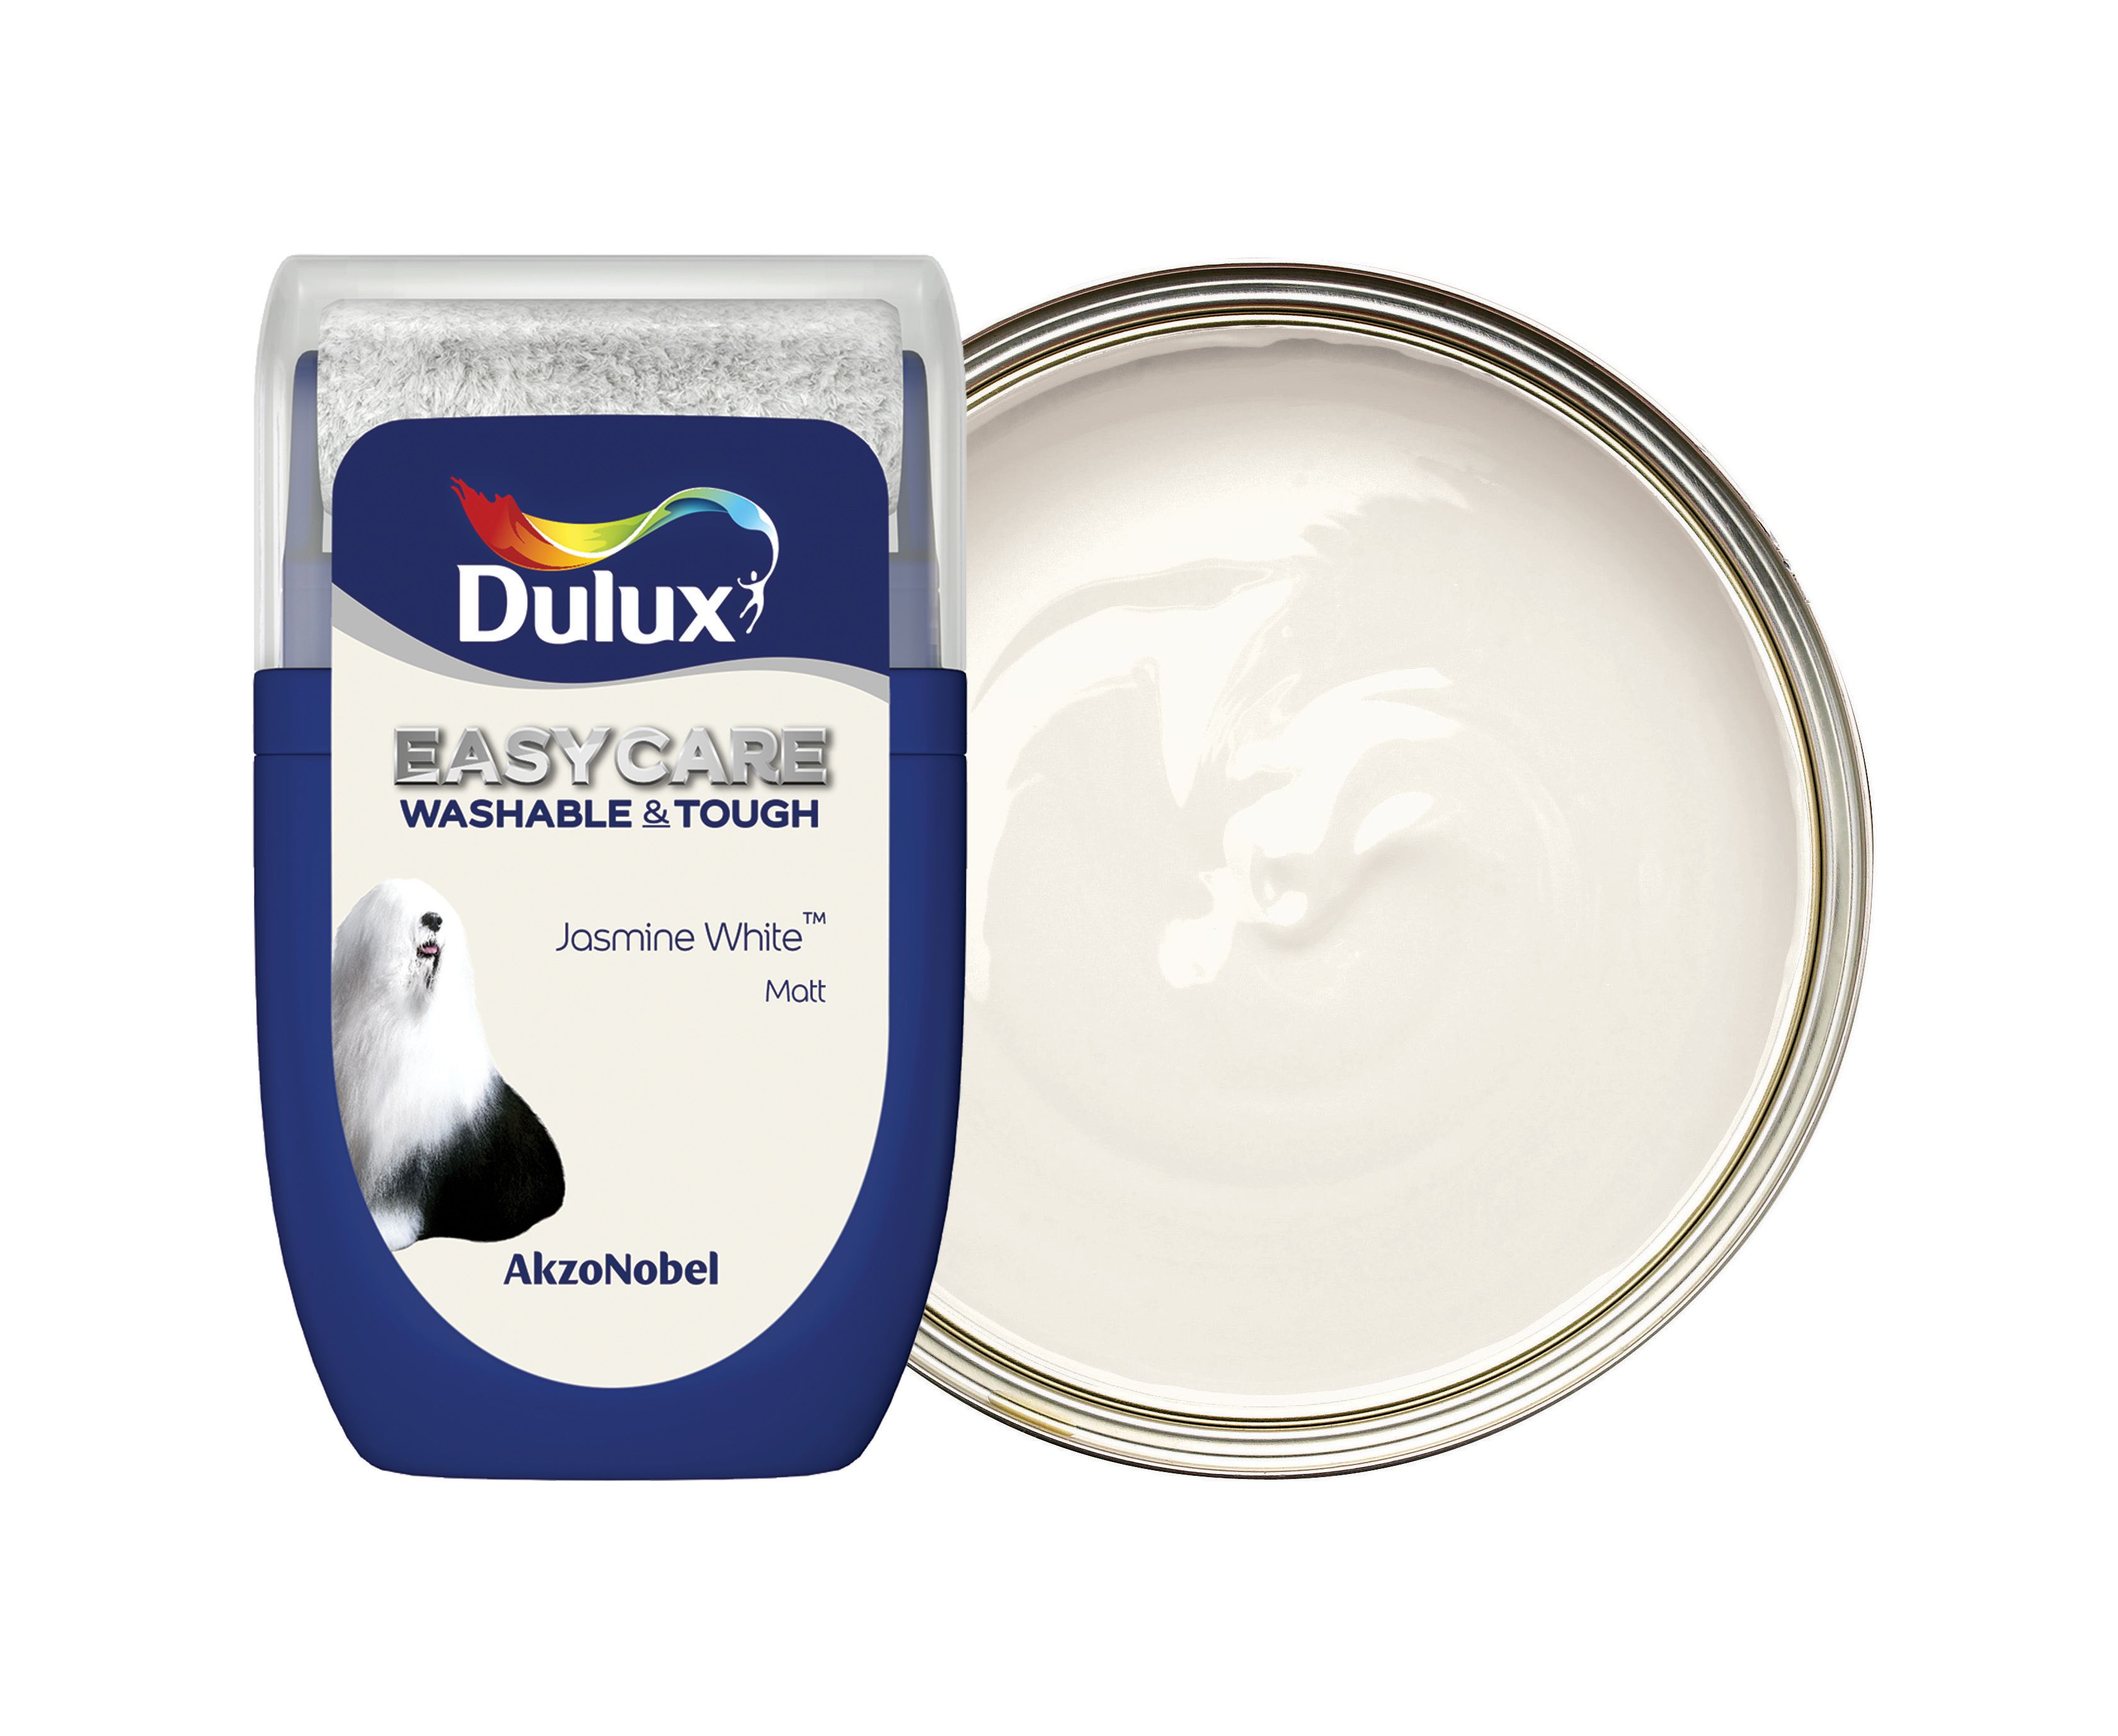 Dulux Easycare Washable & Tough Paint Tester Pot - Jasmine White - 30ml